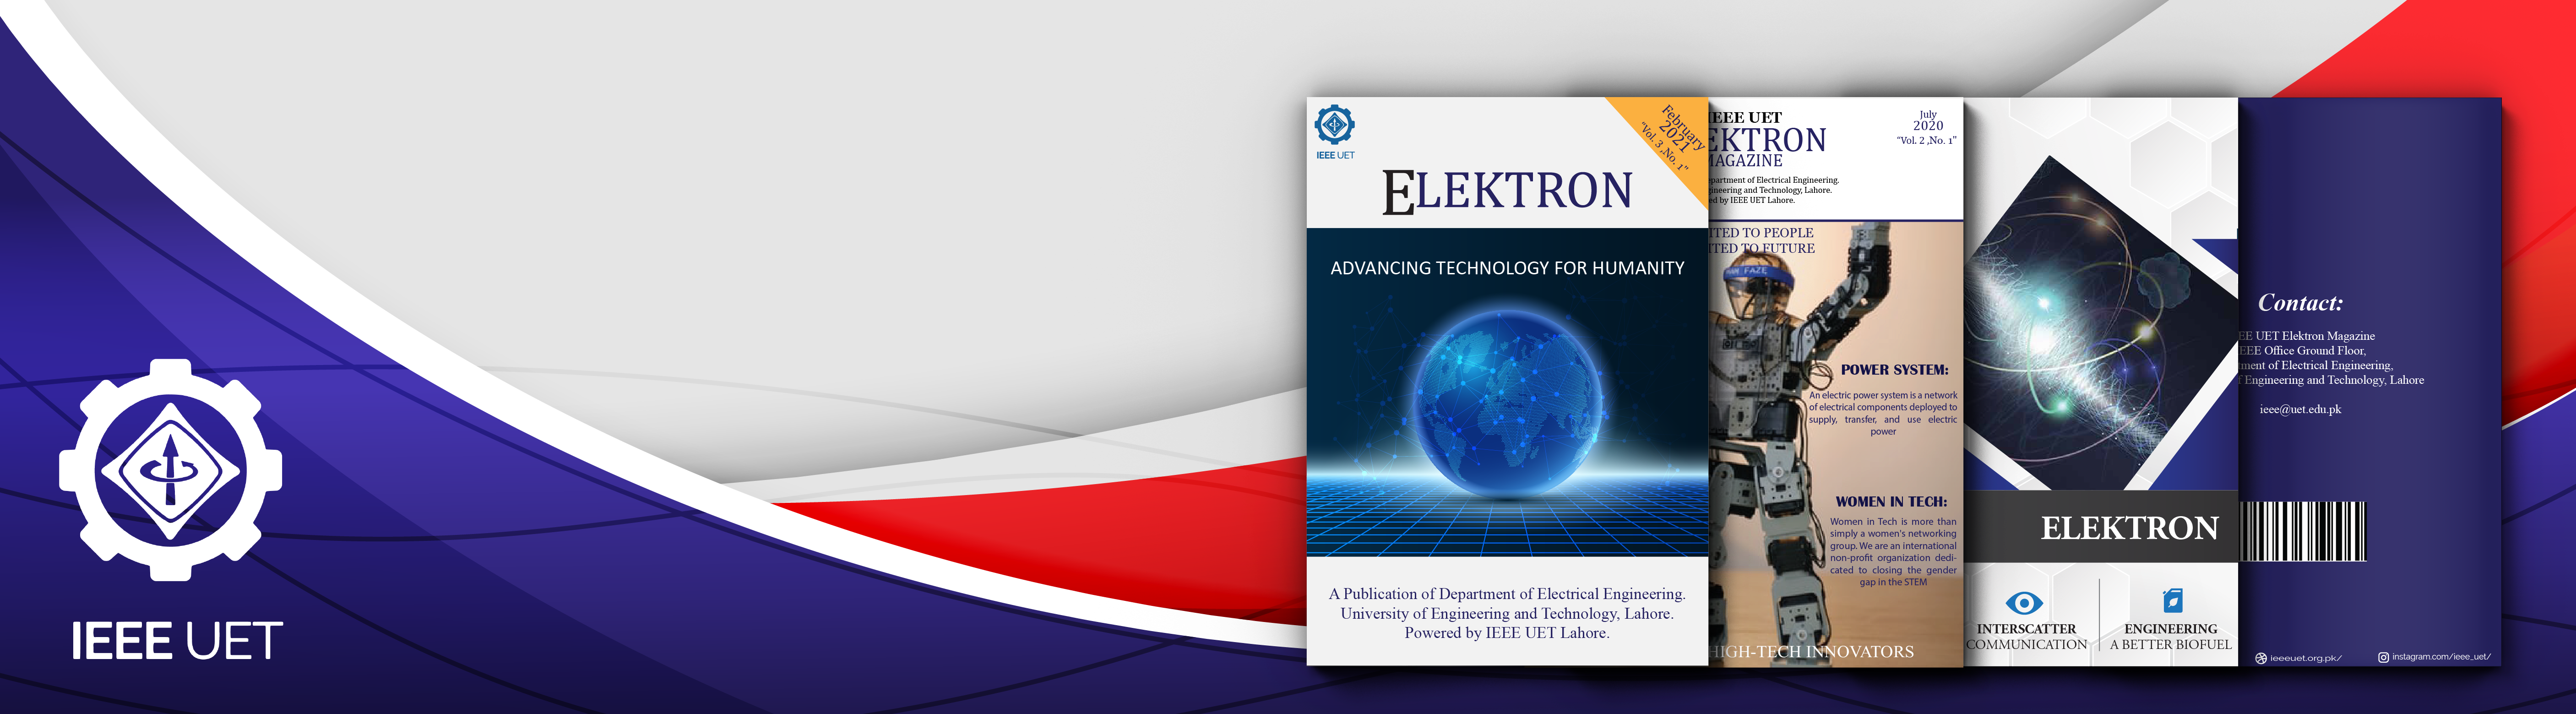 Elektron Magazine